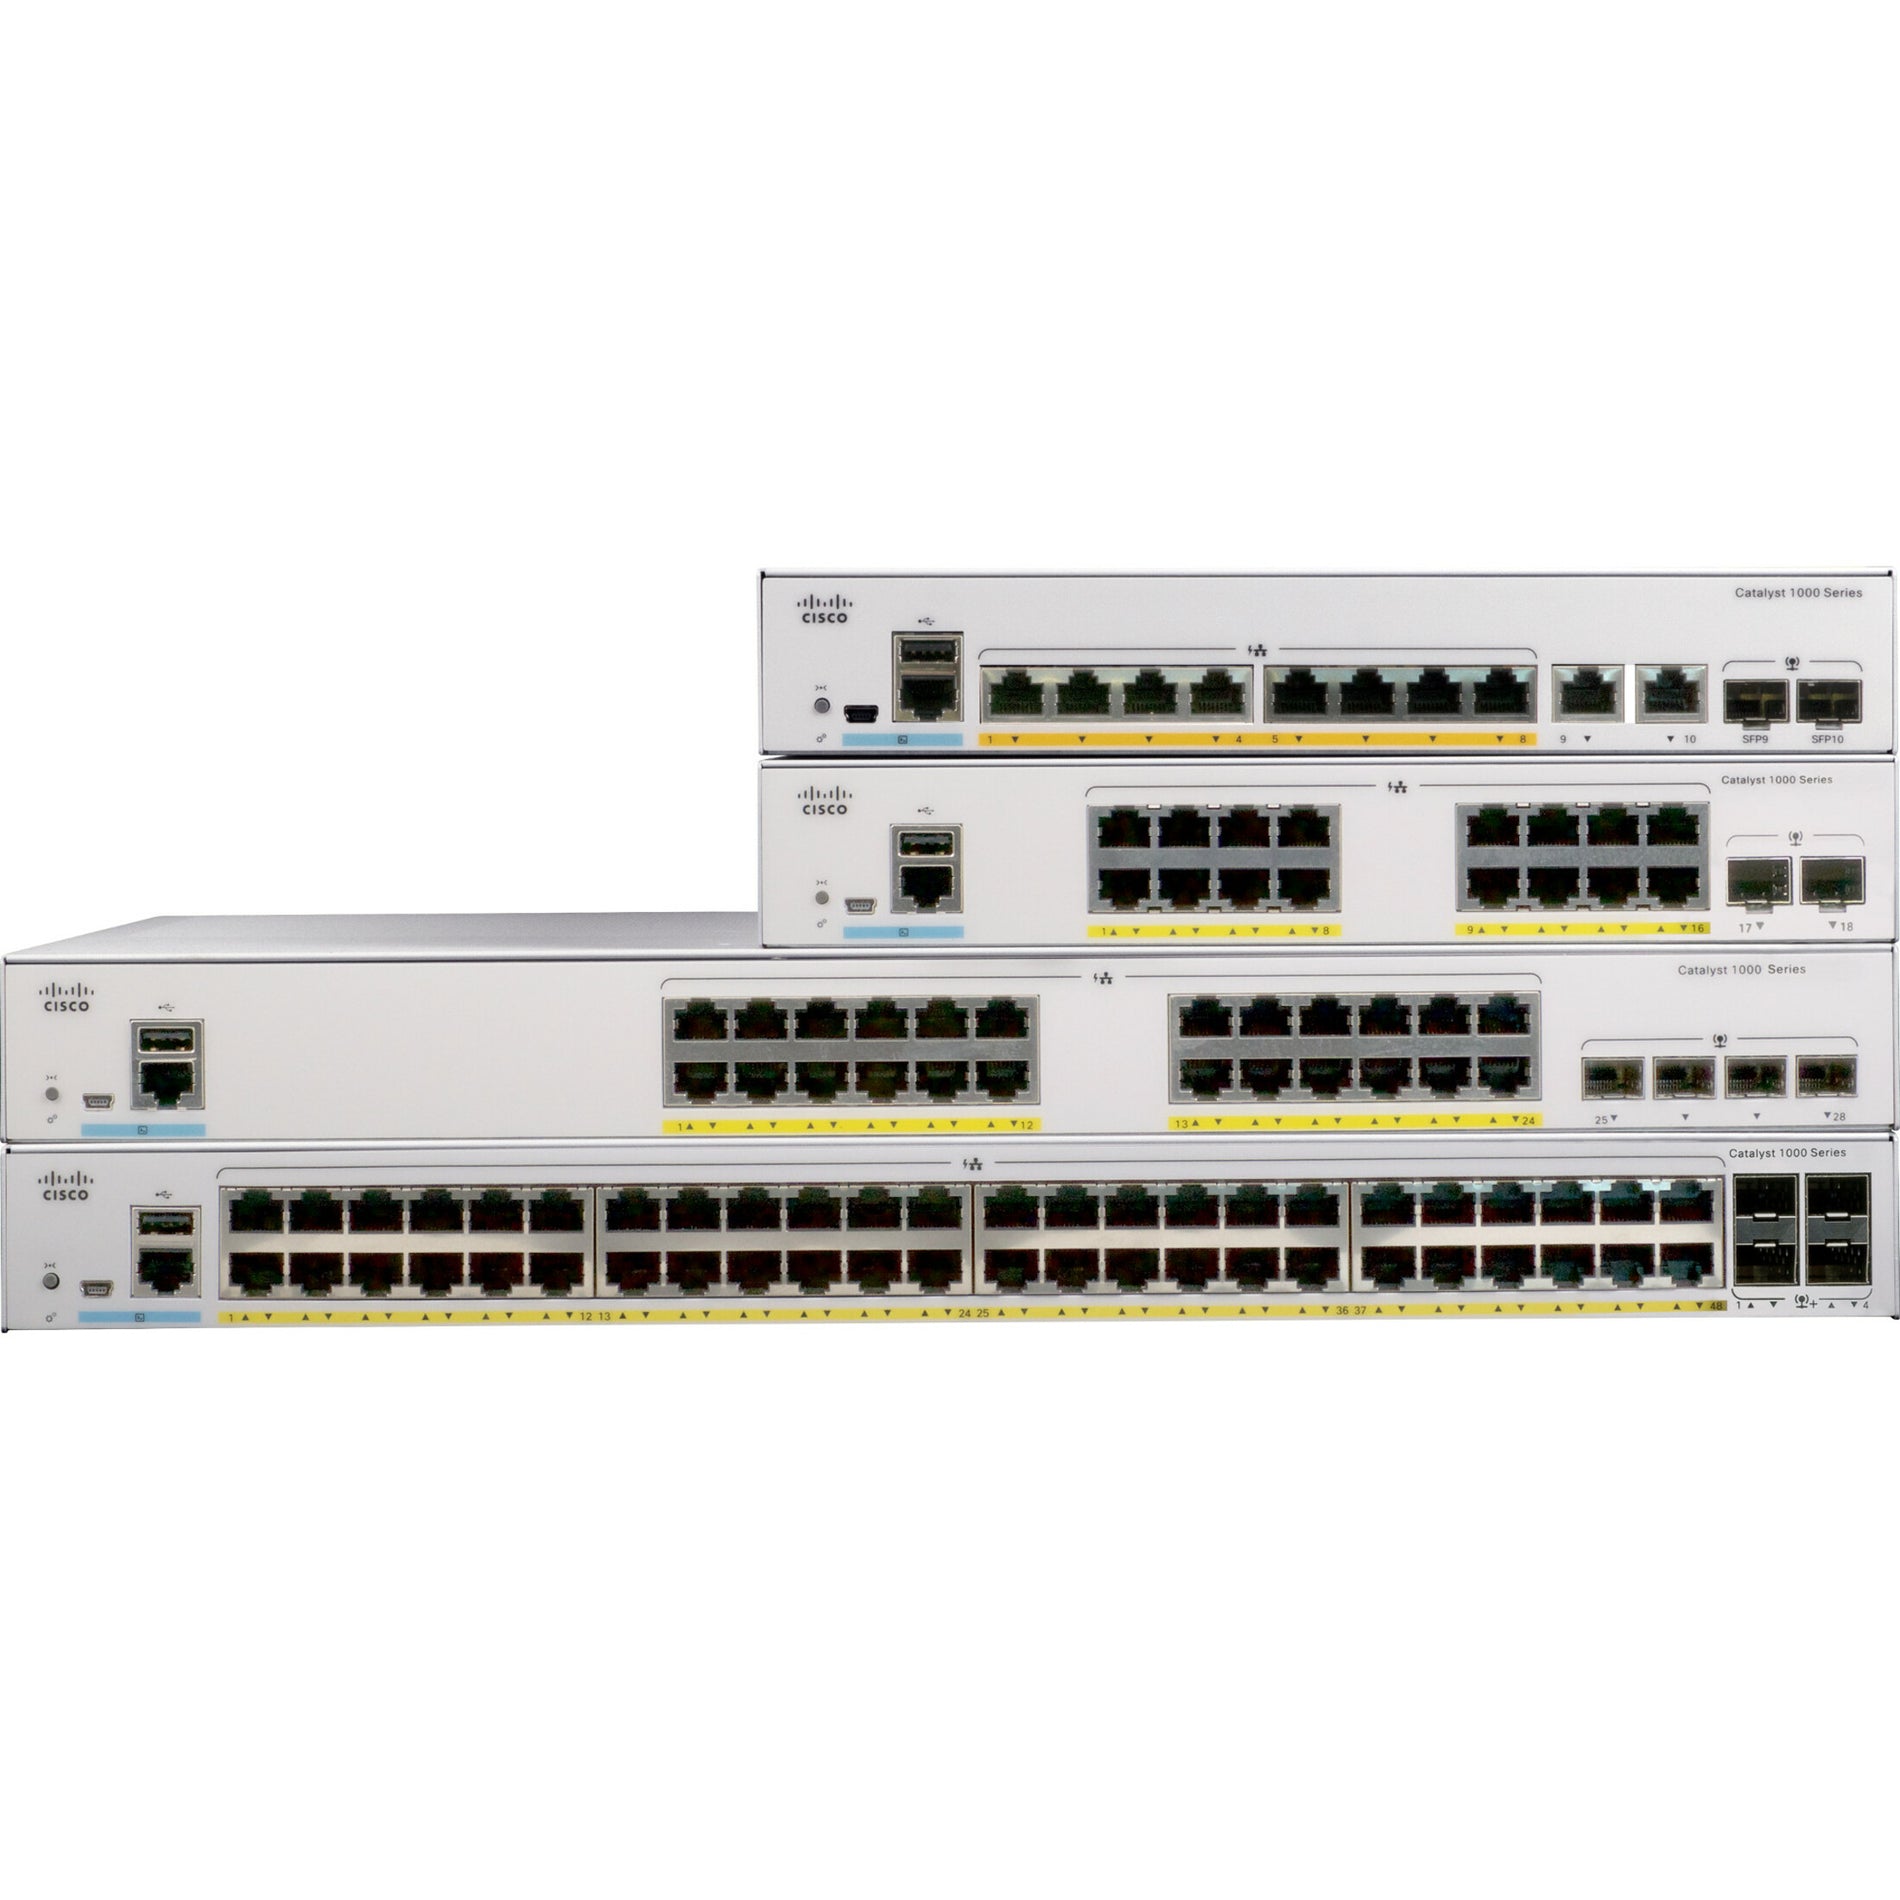 Cisco C1000-16T-E-2G-L Catalyst C1000-16T Ethernet Switch, 16 Gigabit Ethernet Ports, 2 Gigabit Ethernet Uplink Ports